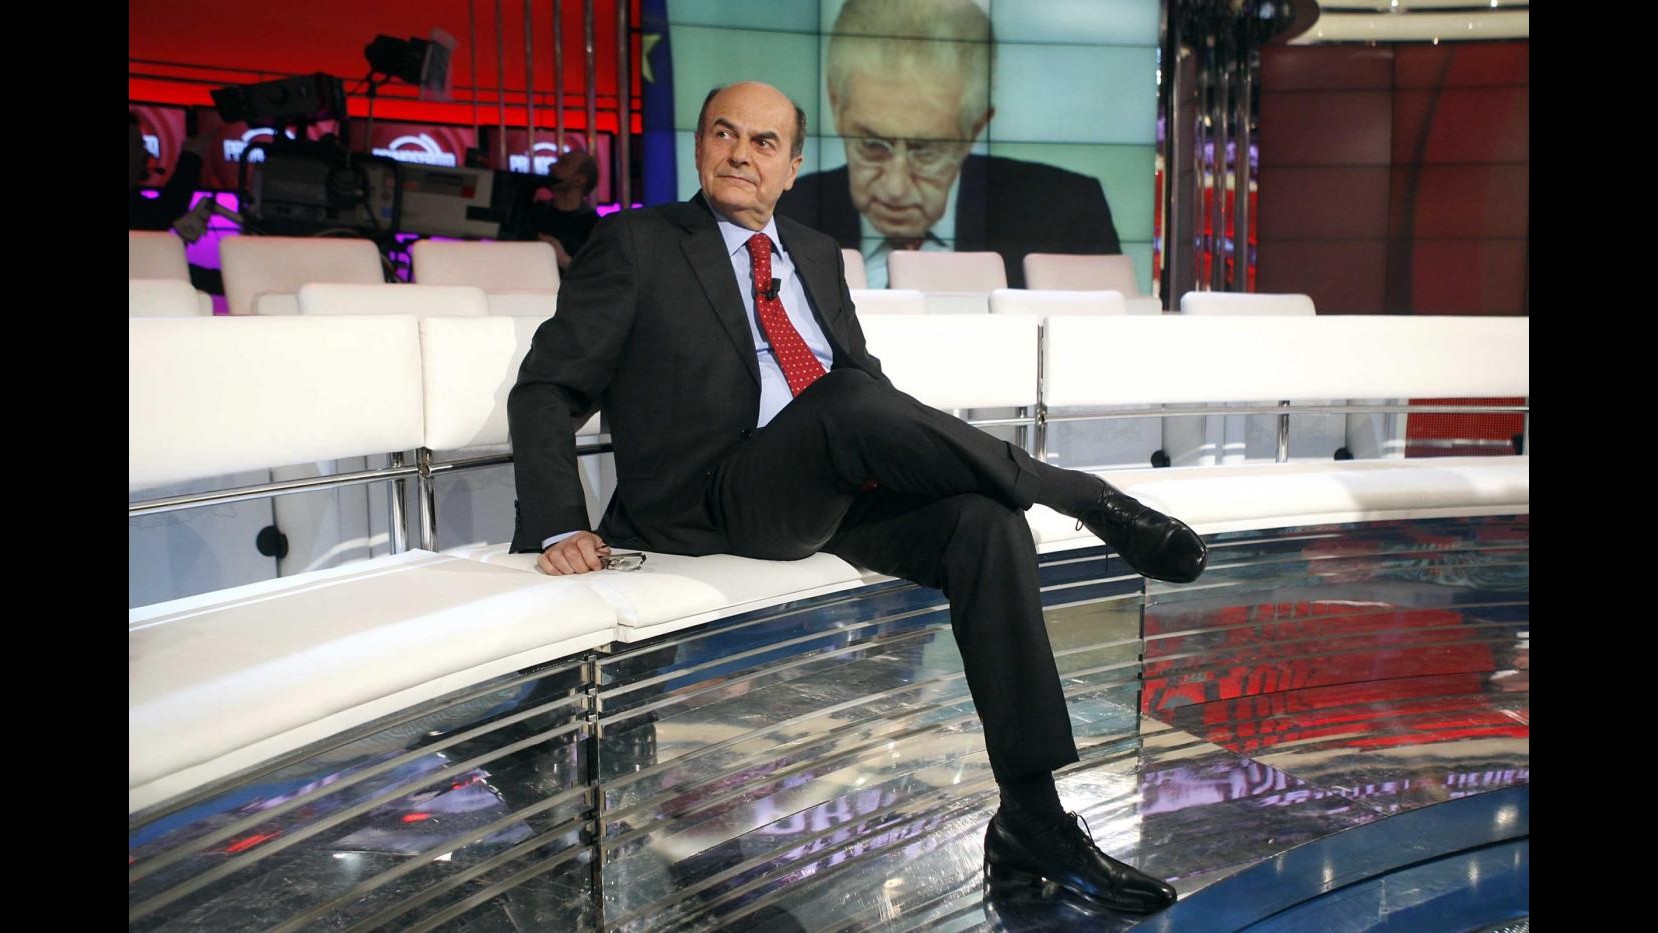 Lavoro, Bersani: Monti non ci può dire prendere o lasciare